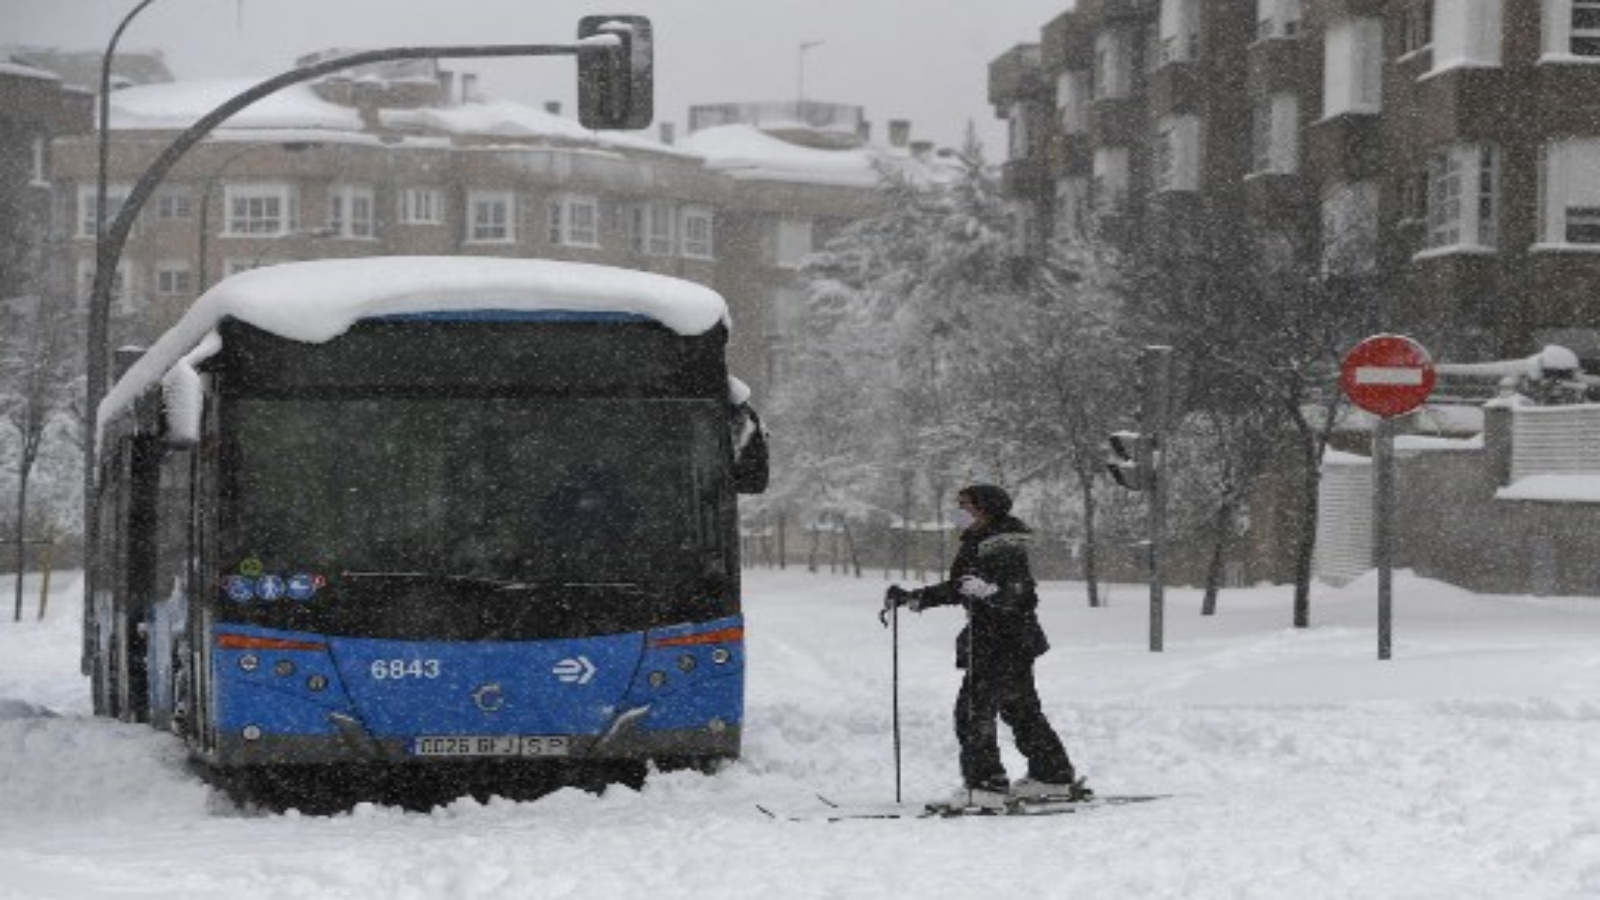 امرأة تتزلج بجوار حافلة عالقة في أحد الشوارع وسط تساقط ثلوج كثيف في مدريد في 9 يناير 2021. خلفت العواصف الثلجية في معظم أنحاء إسبانيا ثلاثة قتلى وتسببت في حدوث فوضى في معظم أنحاء البلاد ، مما أدى إلى محاصرة سائقي السيارات وإغلاق خطوط السكك الحديدية والجوية بالعاصمة